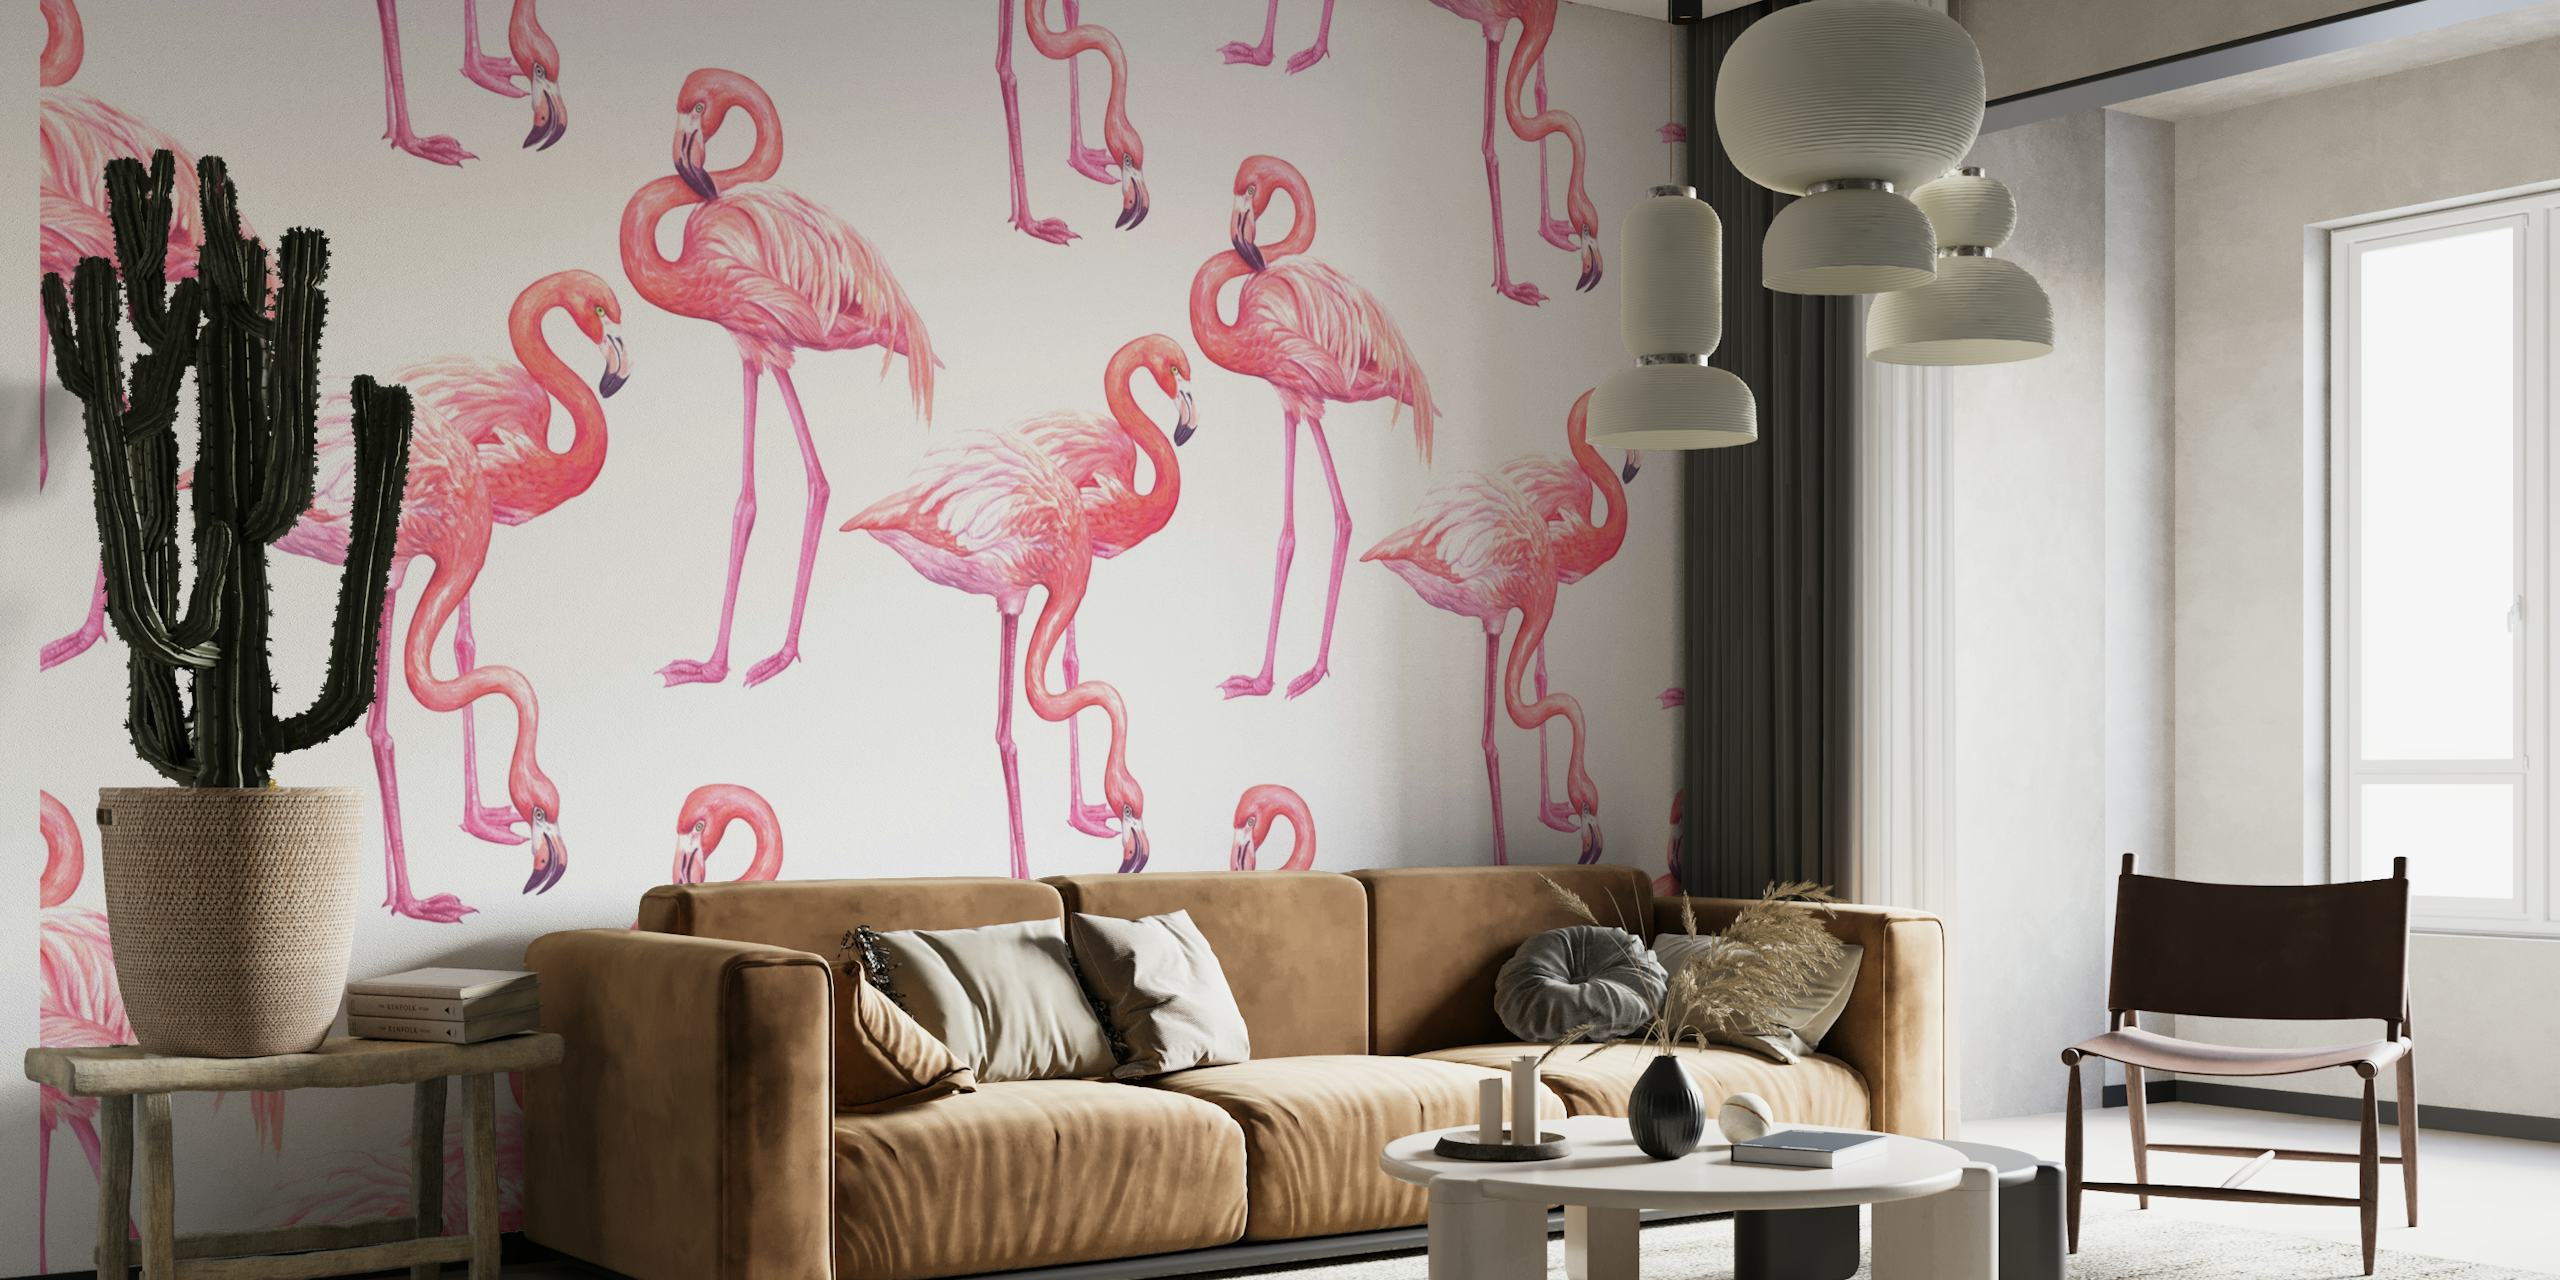 Stijlvolle flamingo's in roze op een witte muurschildering als achtergrond